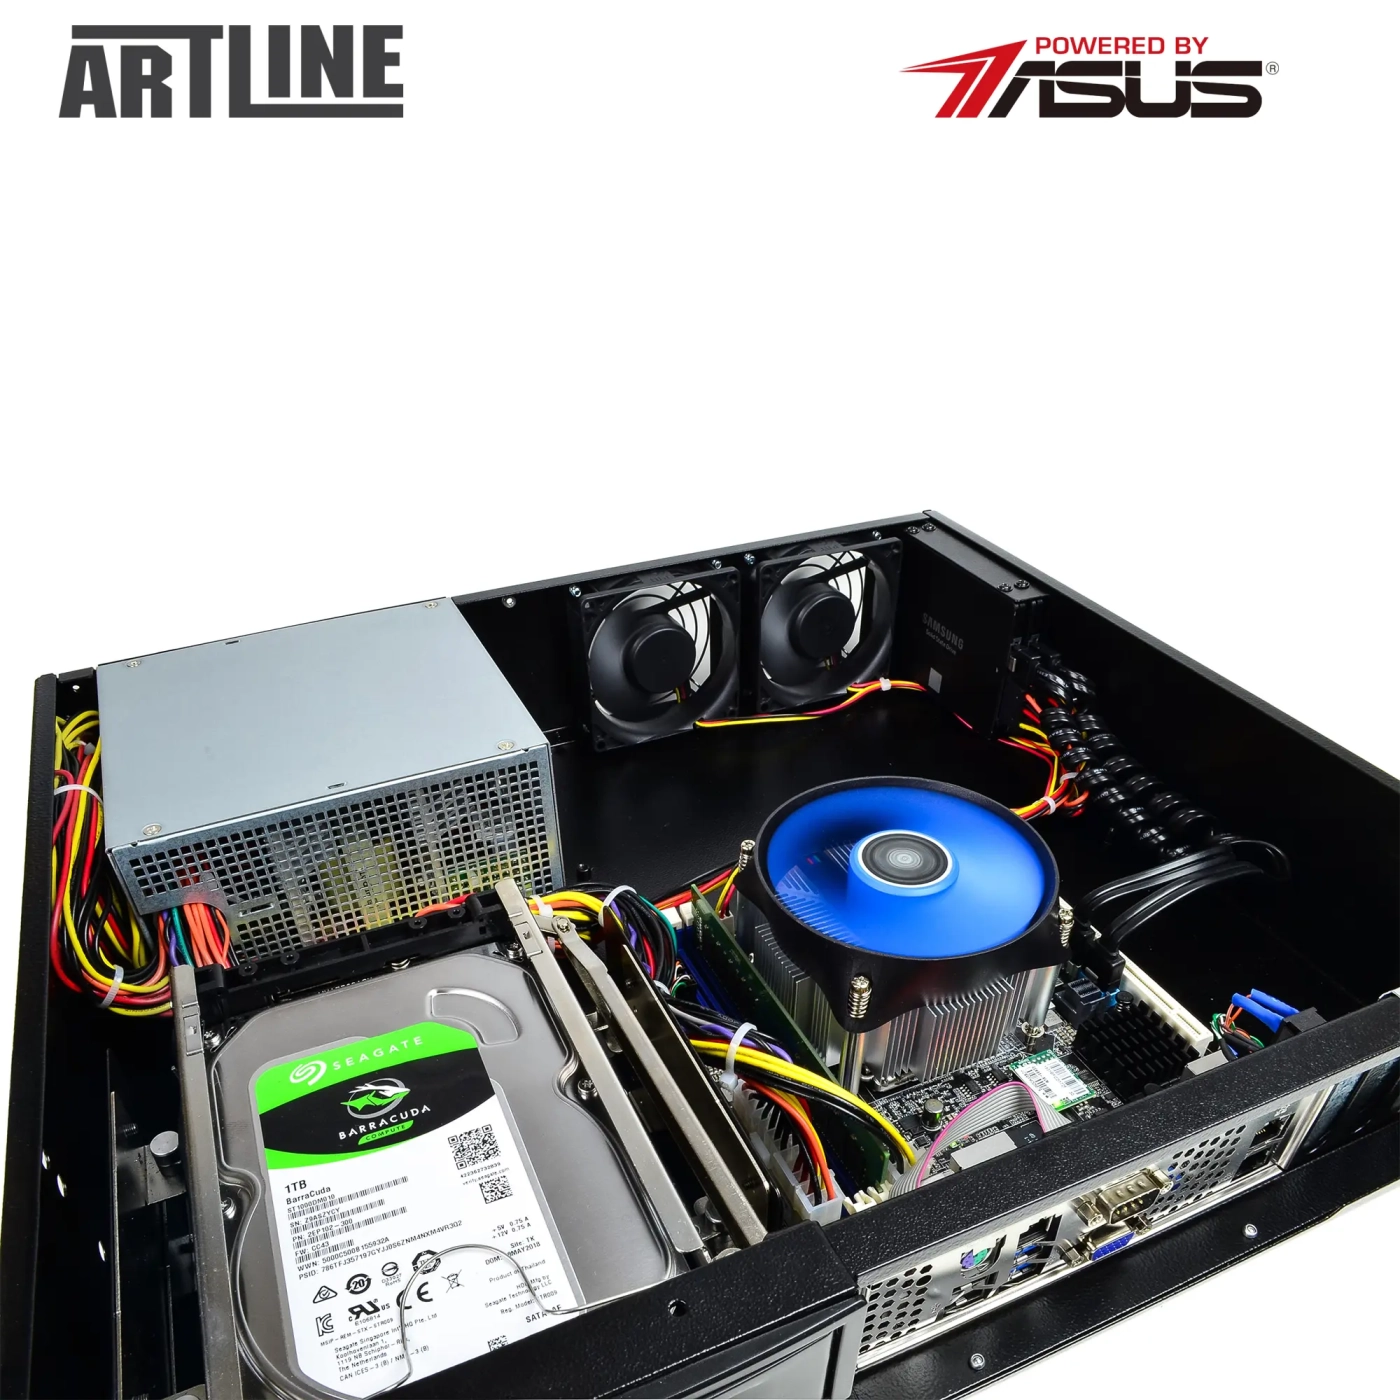 Купить Сервер ARTLINE Business R37 (R37v63) - фото 10